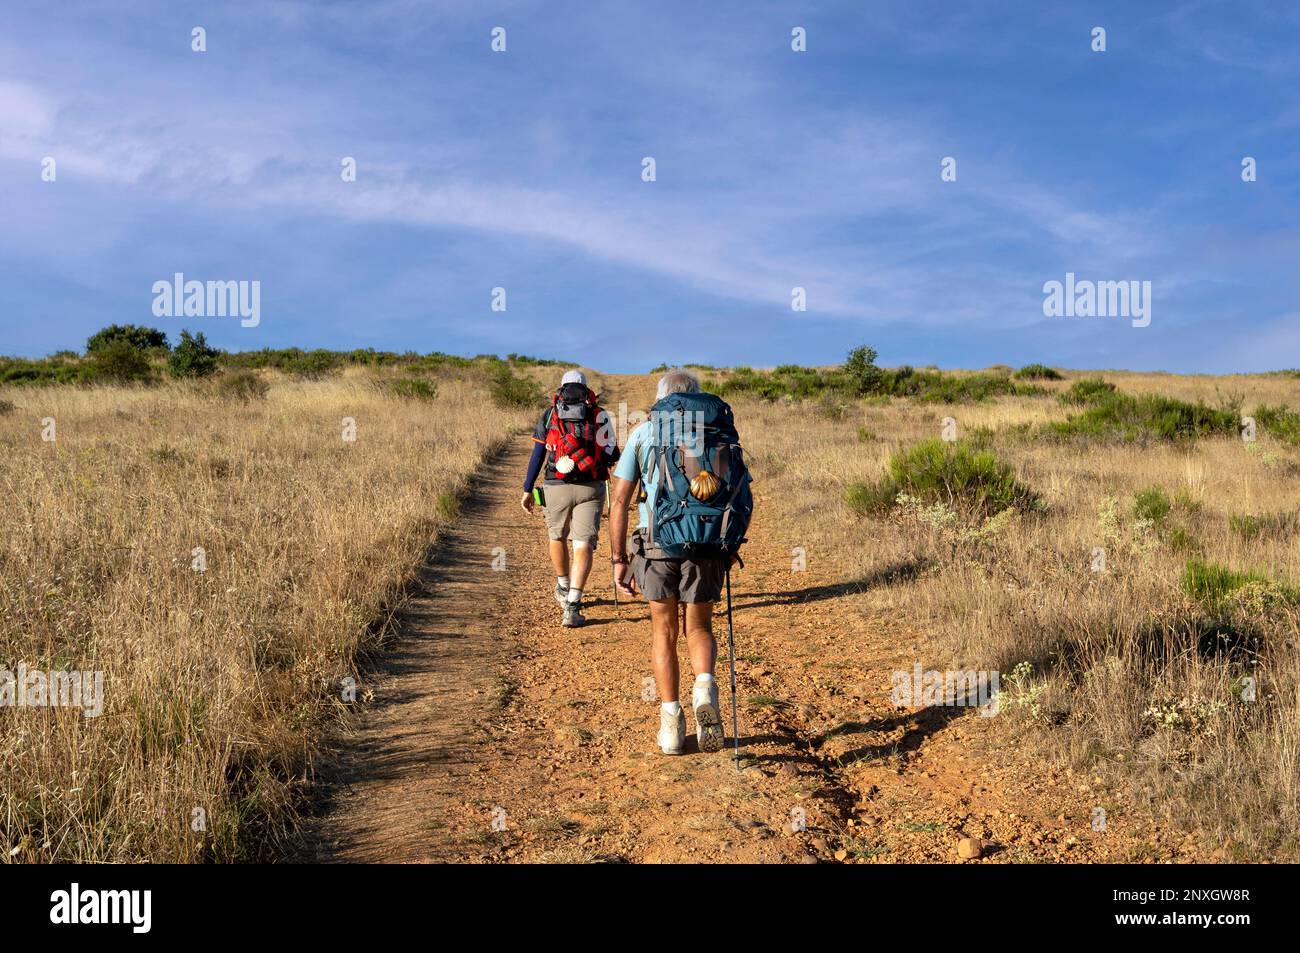 Pèlerins marchant à travers le paysage sec des barons sur le Camino de Santiago, la voie française dans le nord de l'Espagne Banque D'Images